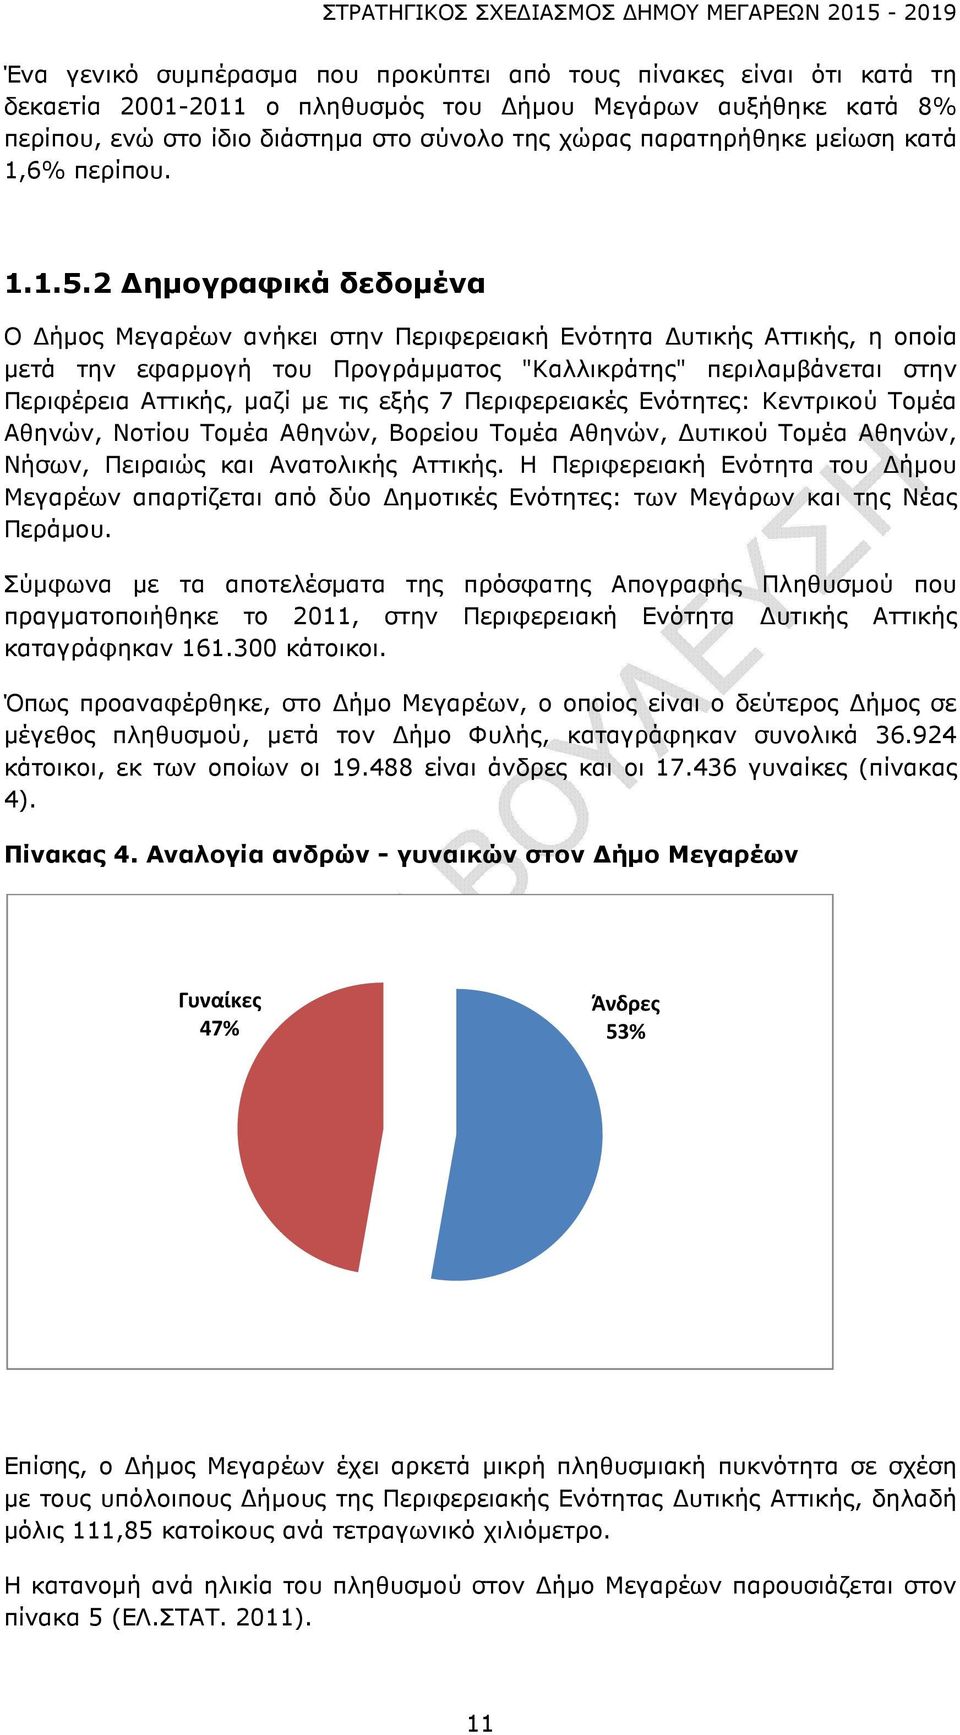 2 Δημογραφικά δεδομένα Ο Δήμος Μεγαρέων ανήκει στην Περιφερειακή Ενότητα Δυτικής Αττικής, η οποία μετά την εφαρμογή του Προγράμματος "Καλλικράτης" περιλαμβάνεται στην Περιφέρεια Αττικής, μαζί με τις